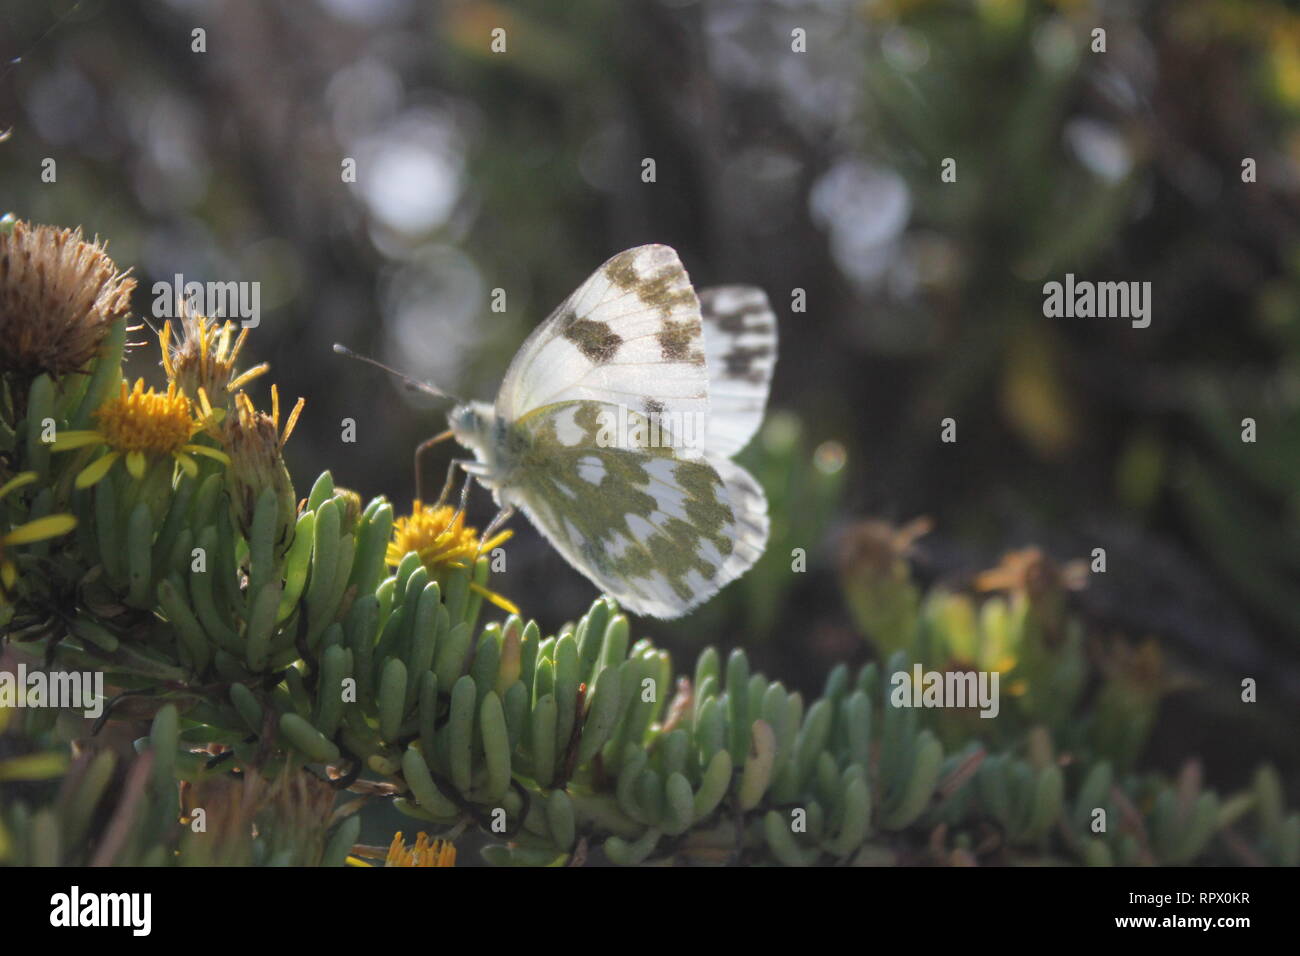 Vasca da bagno bianco (Pontia daplidice), visitando garrigue vegetazione vicino Marfa, Malta Foto Stock